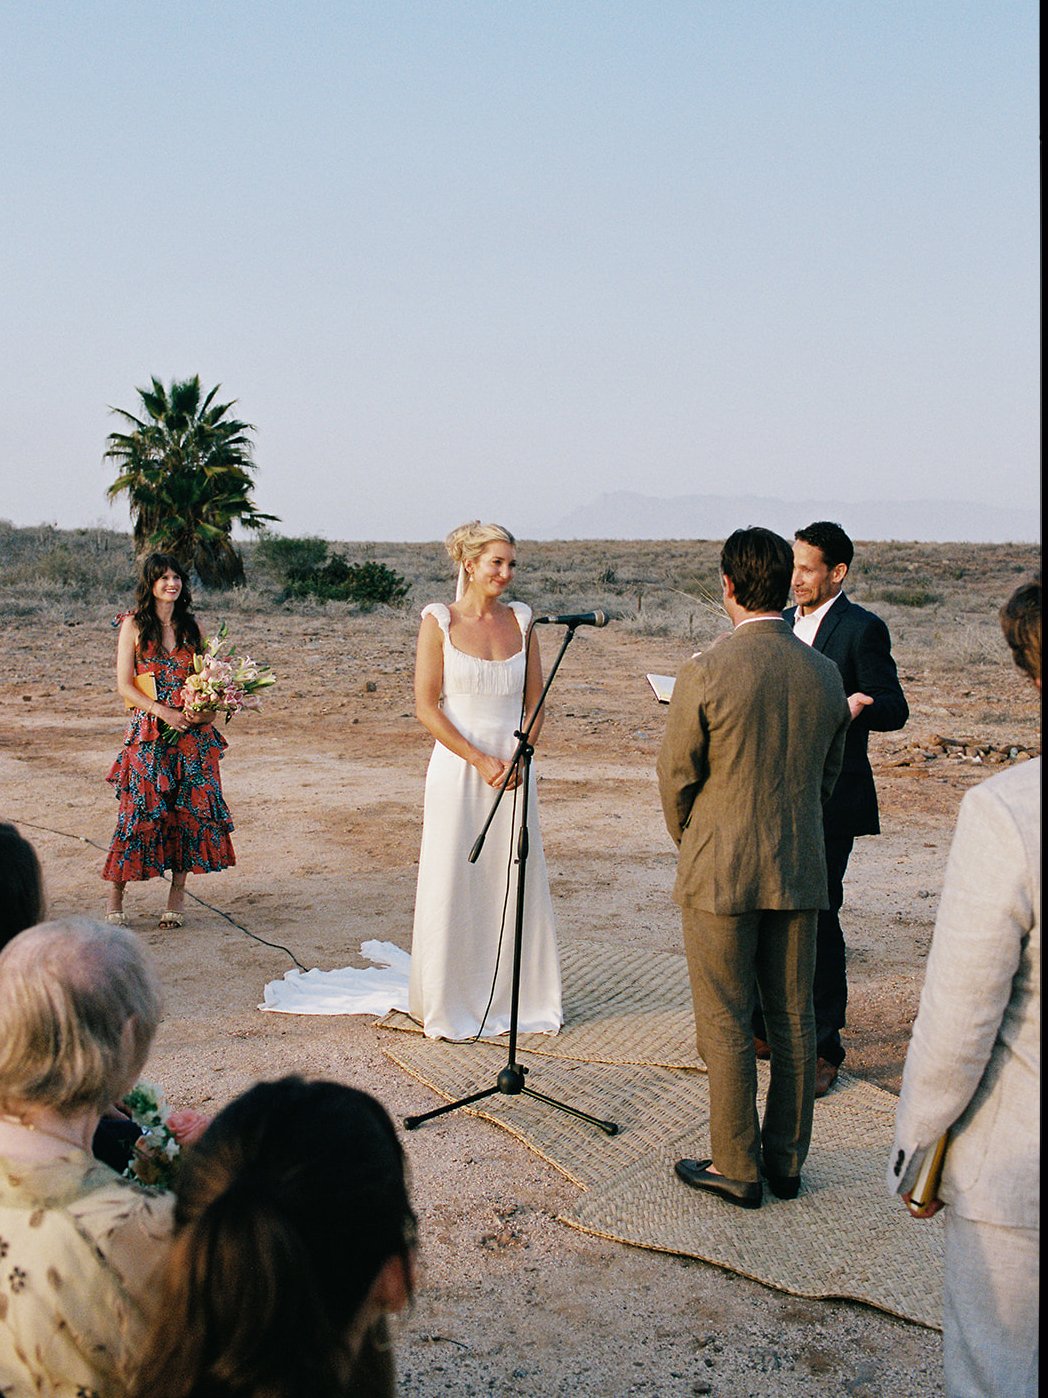 Best-Todos-Santos-Wedding-Photographer-Baja-El Mirador-La Bohemia-35mm-Film-Austin-Mexico-108.jpg